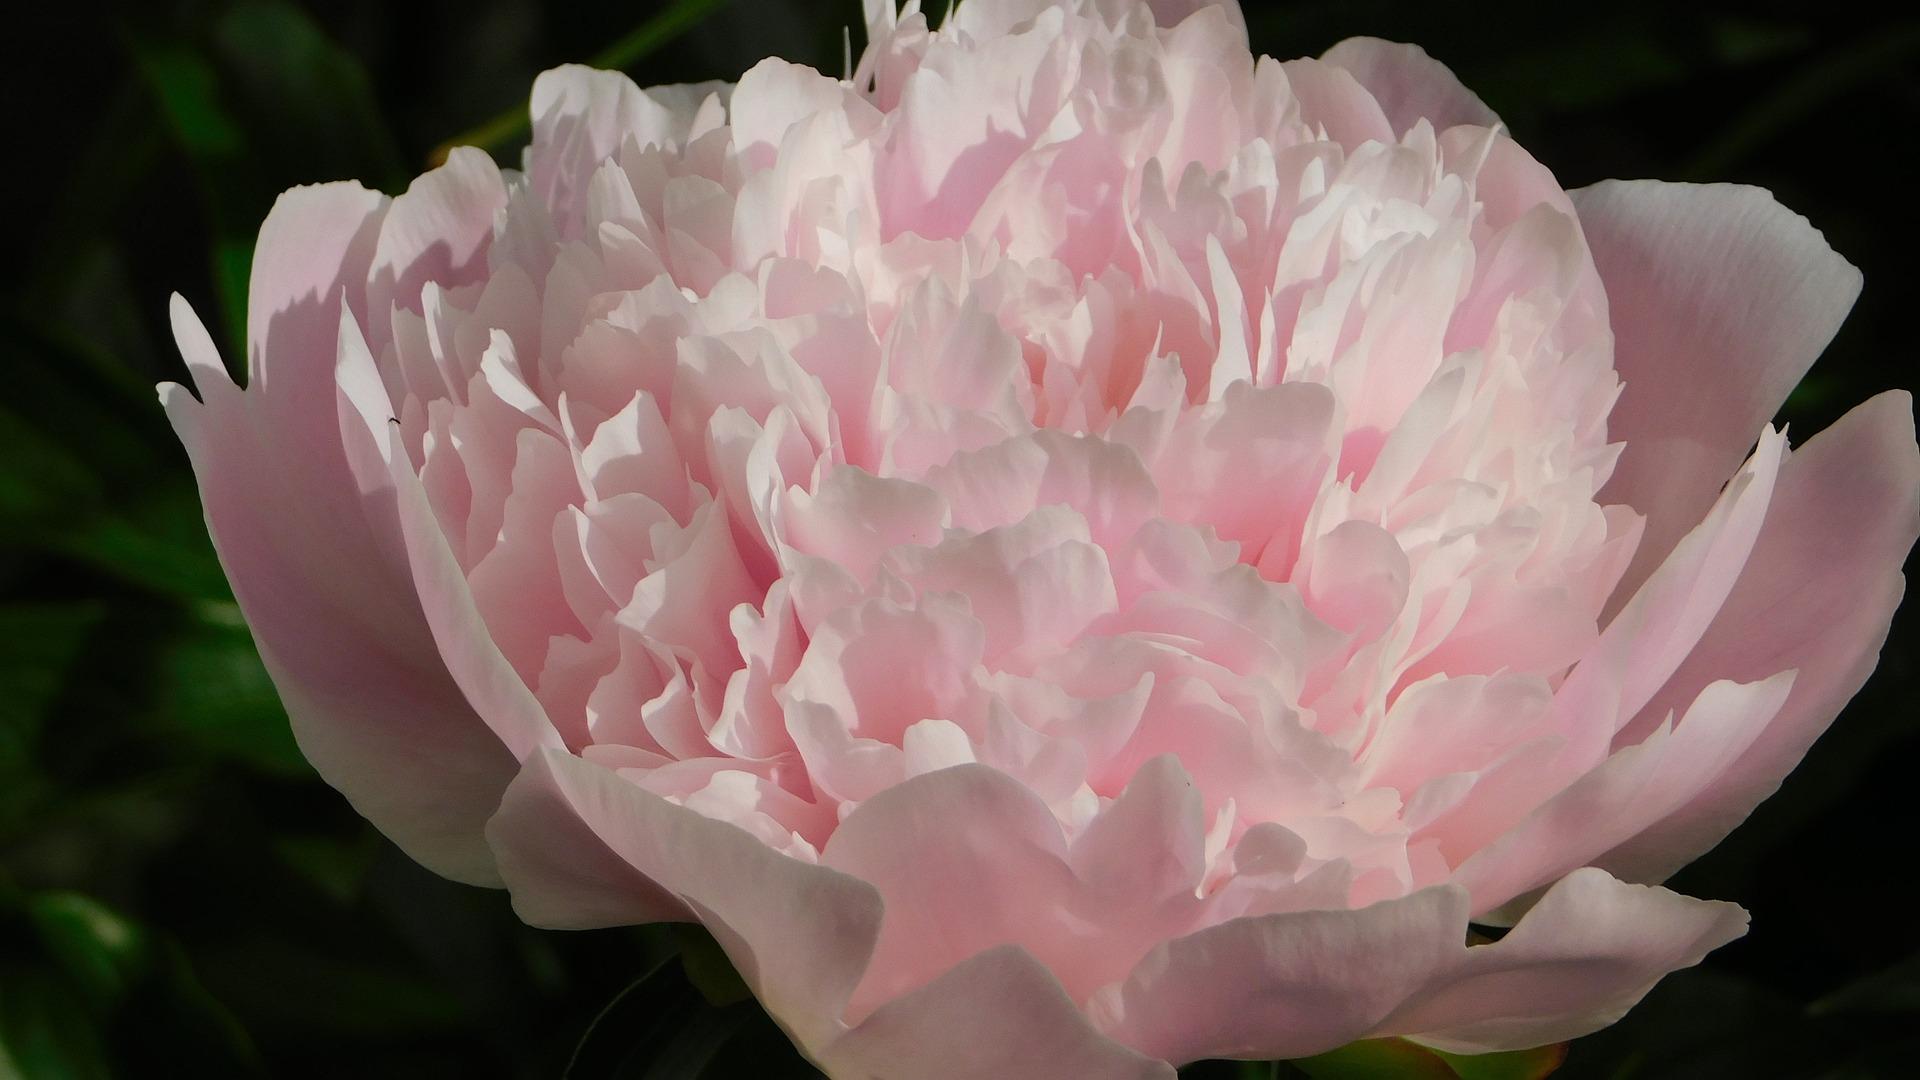 Peony lactiflora 'Sarah Bernhardt' - Peony from Leo Berbee Bulb Company